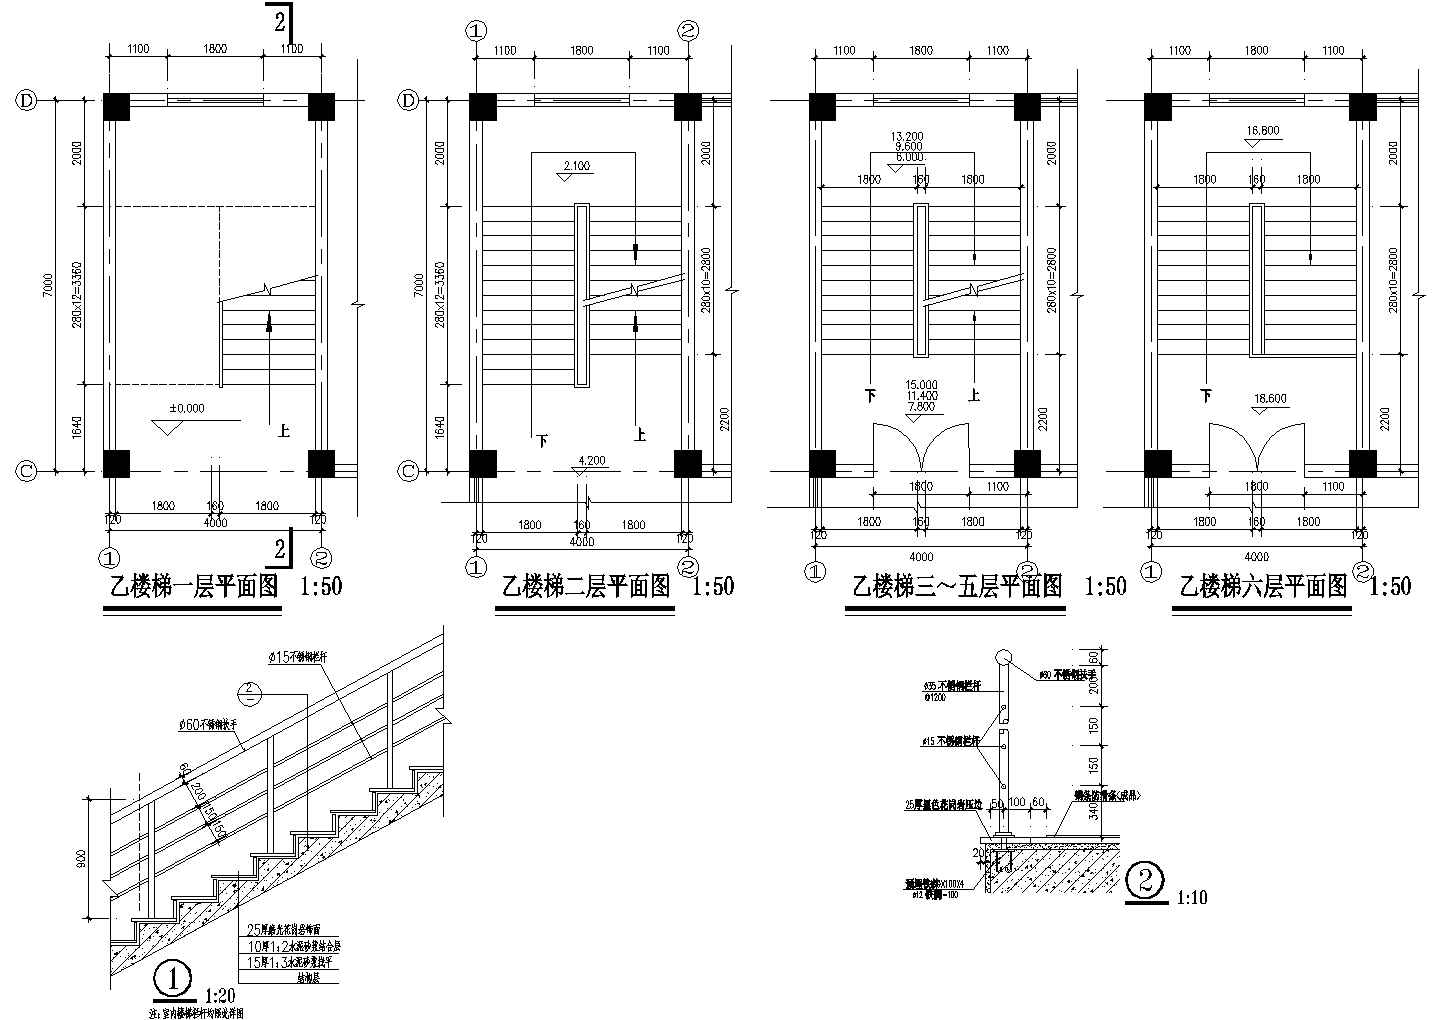 【常州】某多层宾馆全套cad规划设计施工图纸(含电梯机房屋顶平面图 )